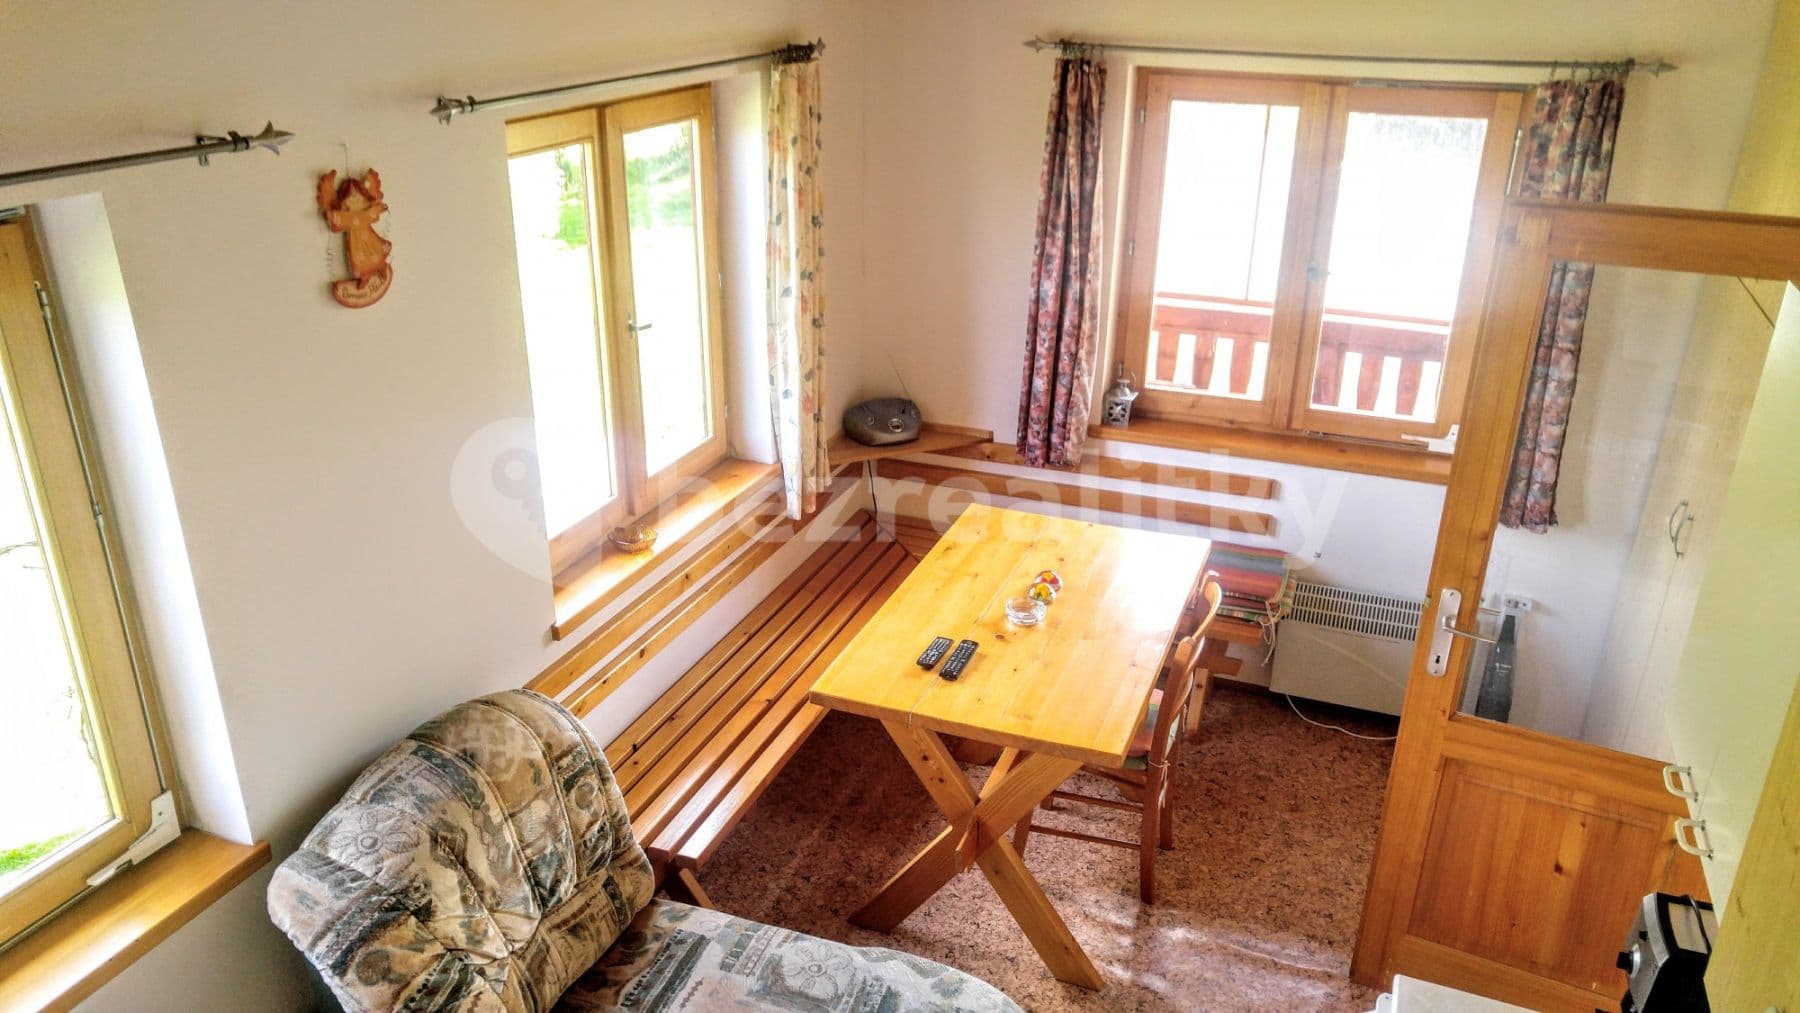 2 bedroom with open-plan kitchen flat to rent, 53 m², Šlovice, Hřebečníky, Středočeský Region